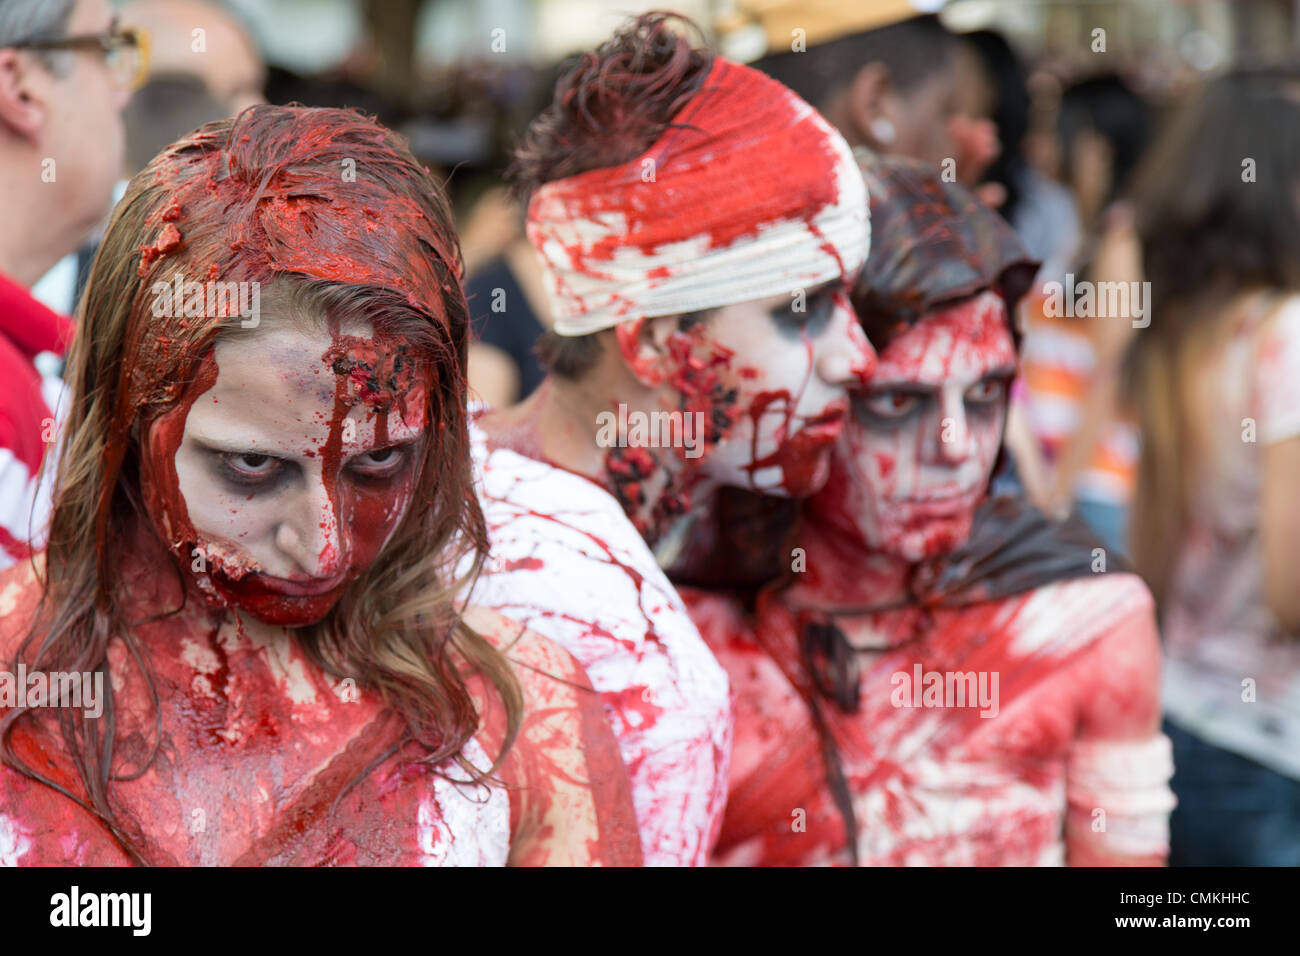 Sao Paulo, Brasilien. 2nd. November 2013. Menschen, die als Zombies verkleidet sind, besuchen den jährlichen Zombie Walk in Sao Paulo, Brasilien. Quelle: Andre M. Chang/Alamy Live News Stockfoto